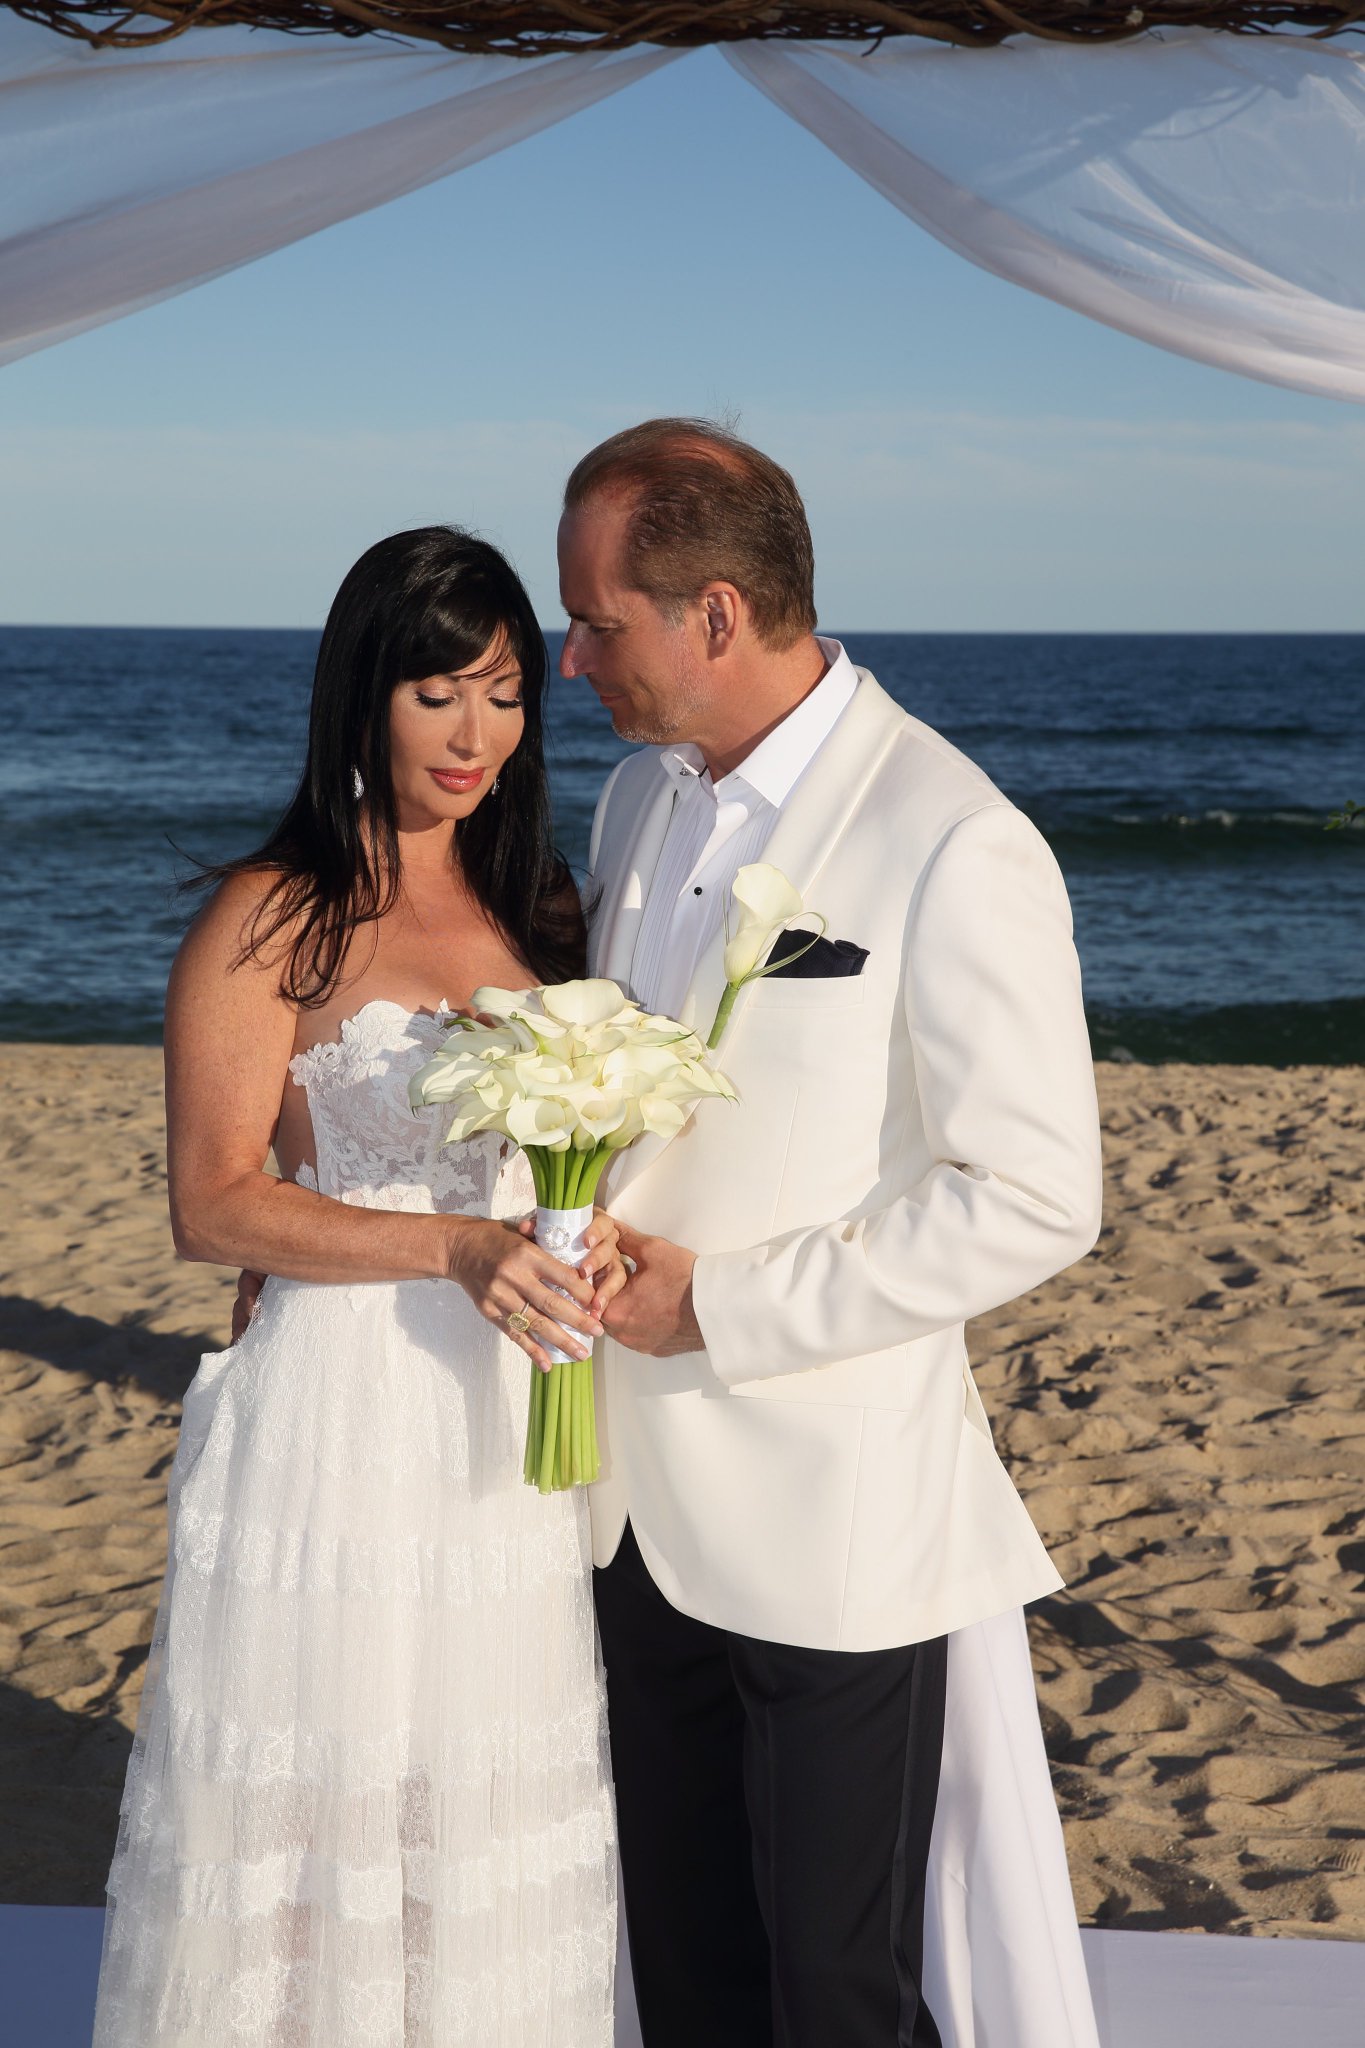 Elyse Slaine gets married on the beach.